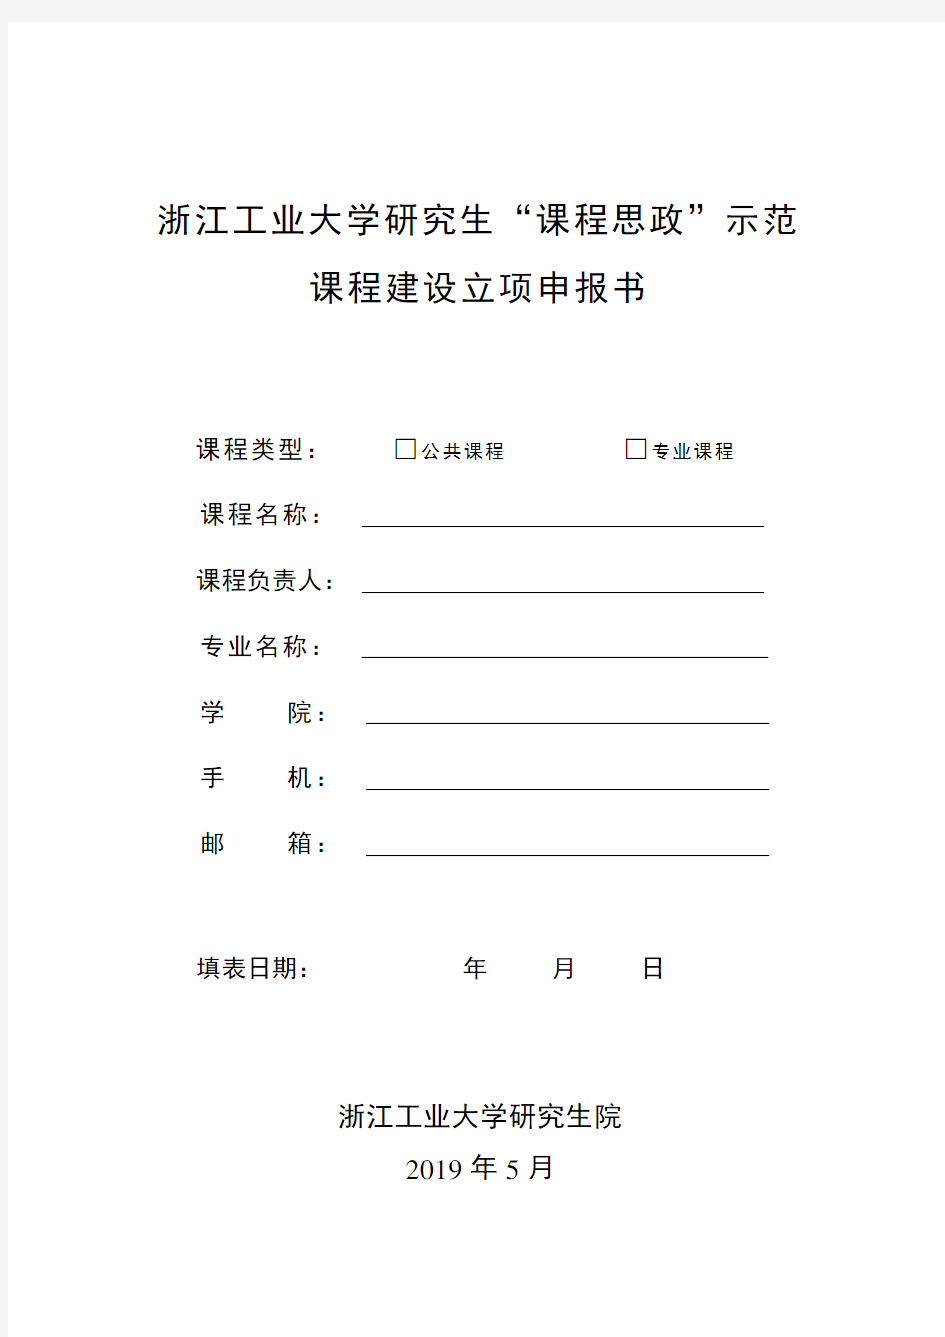 浙江工业大学研究生课程思政示范课程建设立项申报书